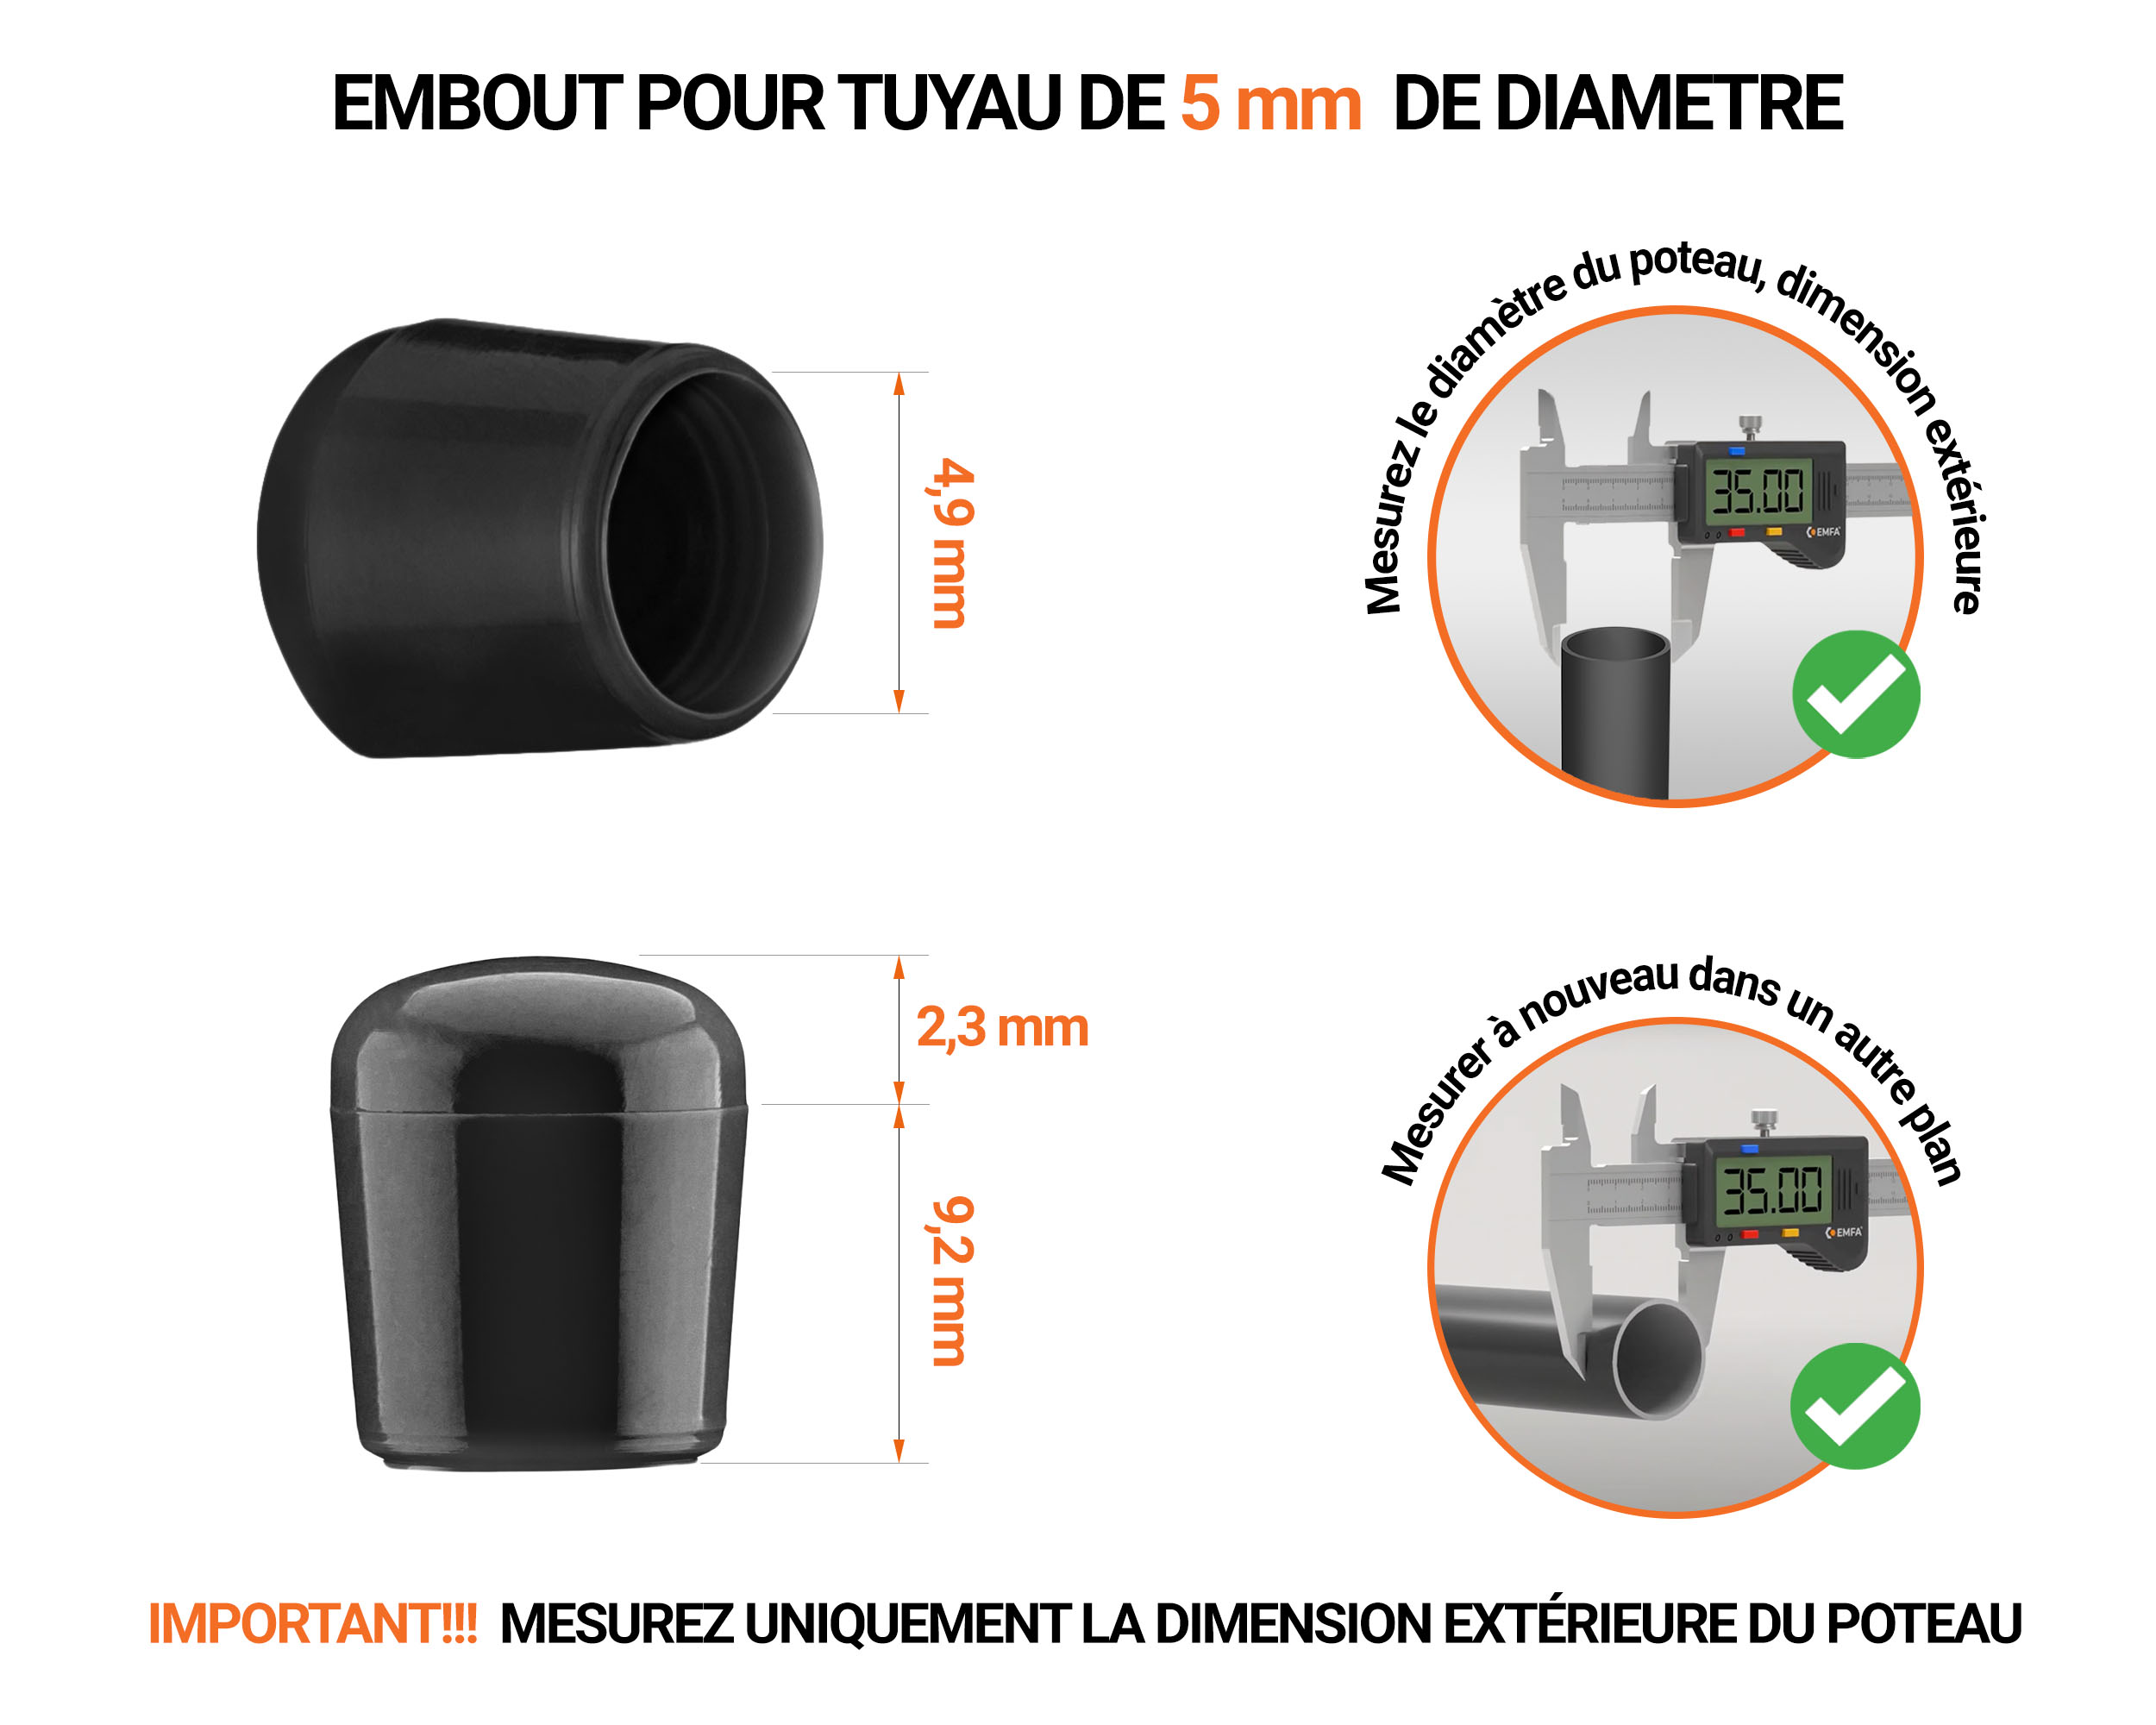 Embout noir de diamètre extérieur 5 mm pour tube rond avec dimensions et guide de mesure correcte du bouchon plastique.